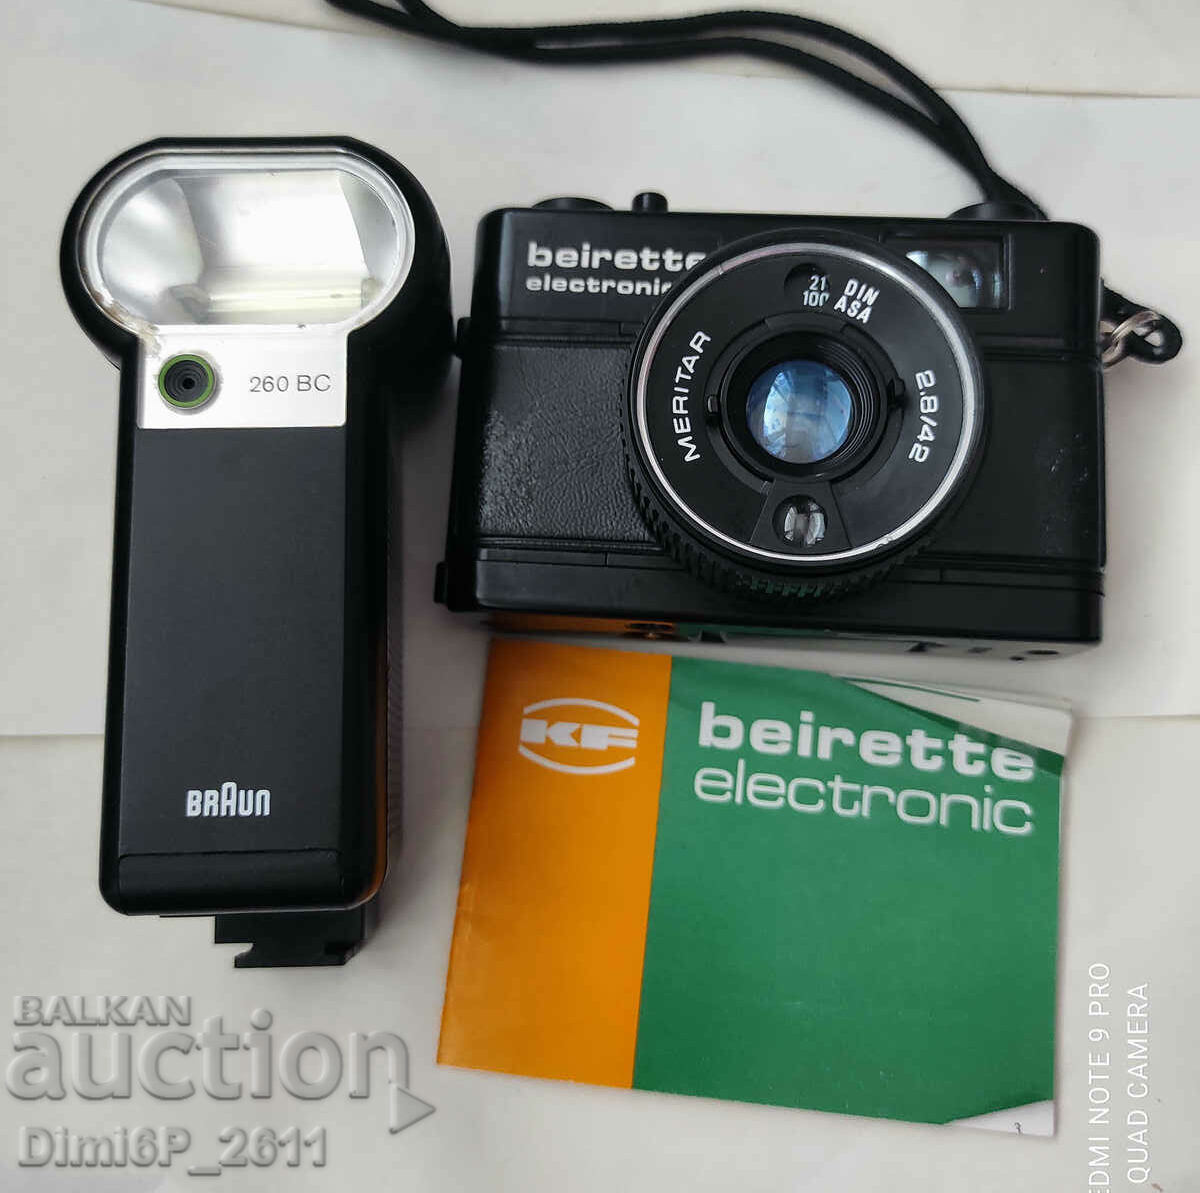 Ηλεκτρονική κάμερα Beirette με φλας Braun 260 MC